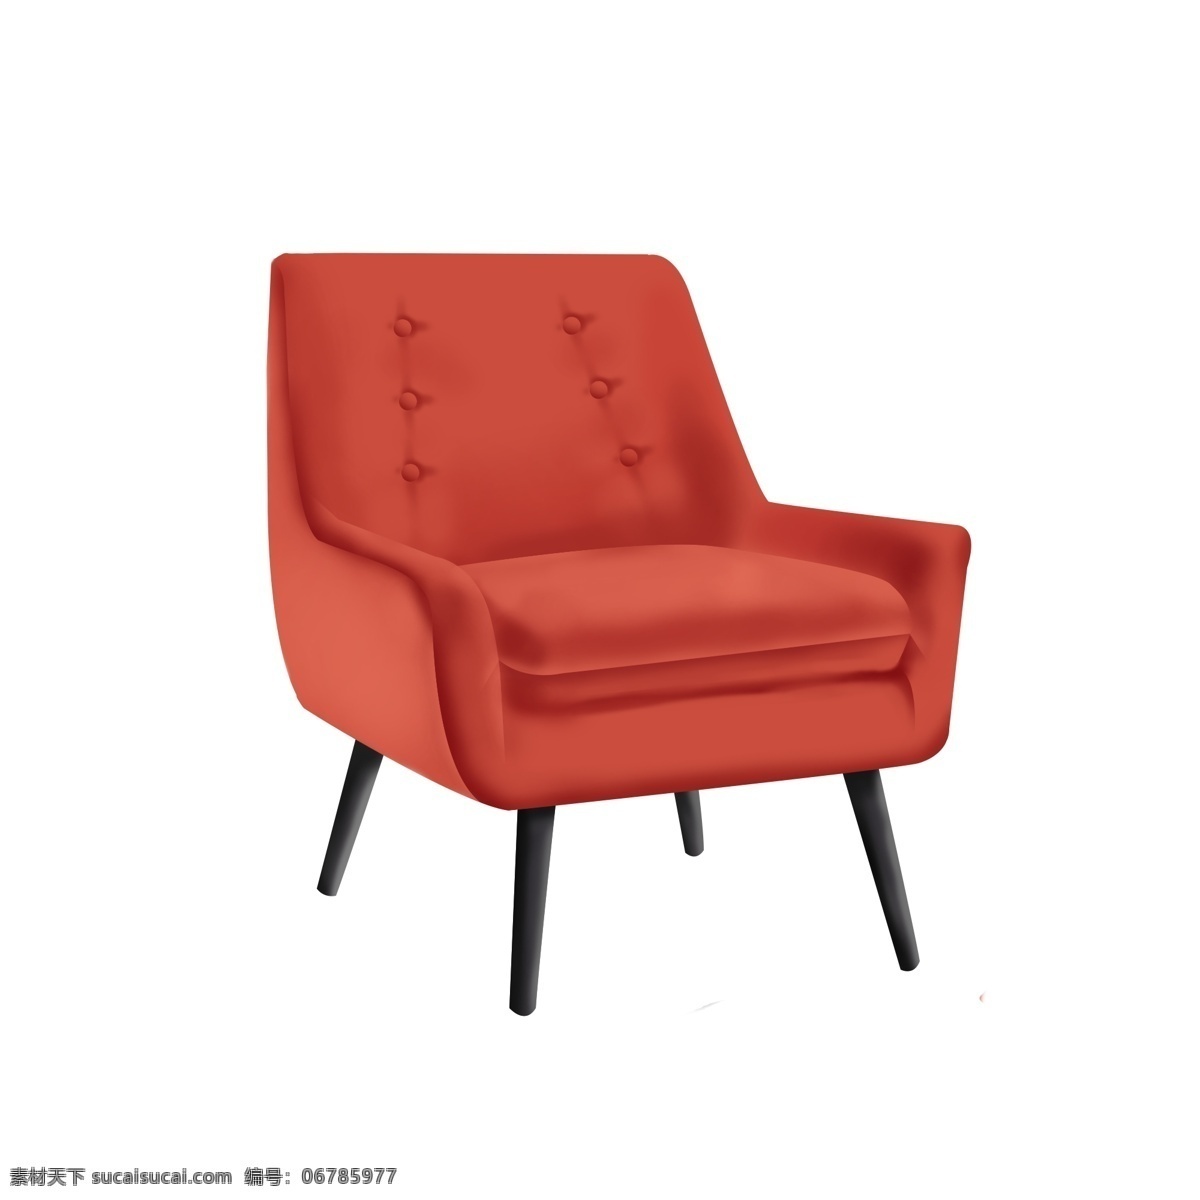 手绘 家具 沙发椅 红色 设计元素 客厅 家居 家具元素 手绘元素